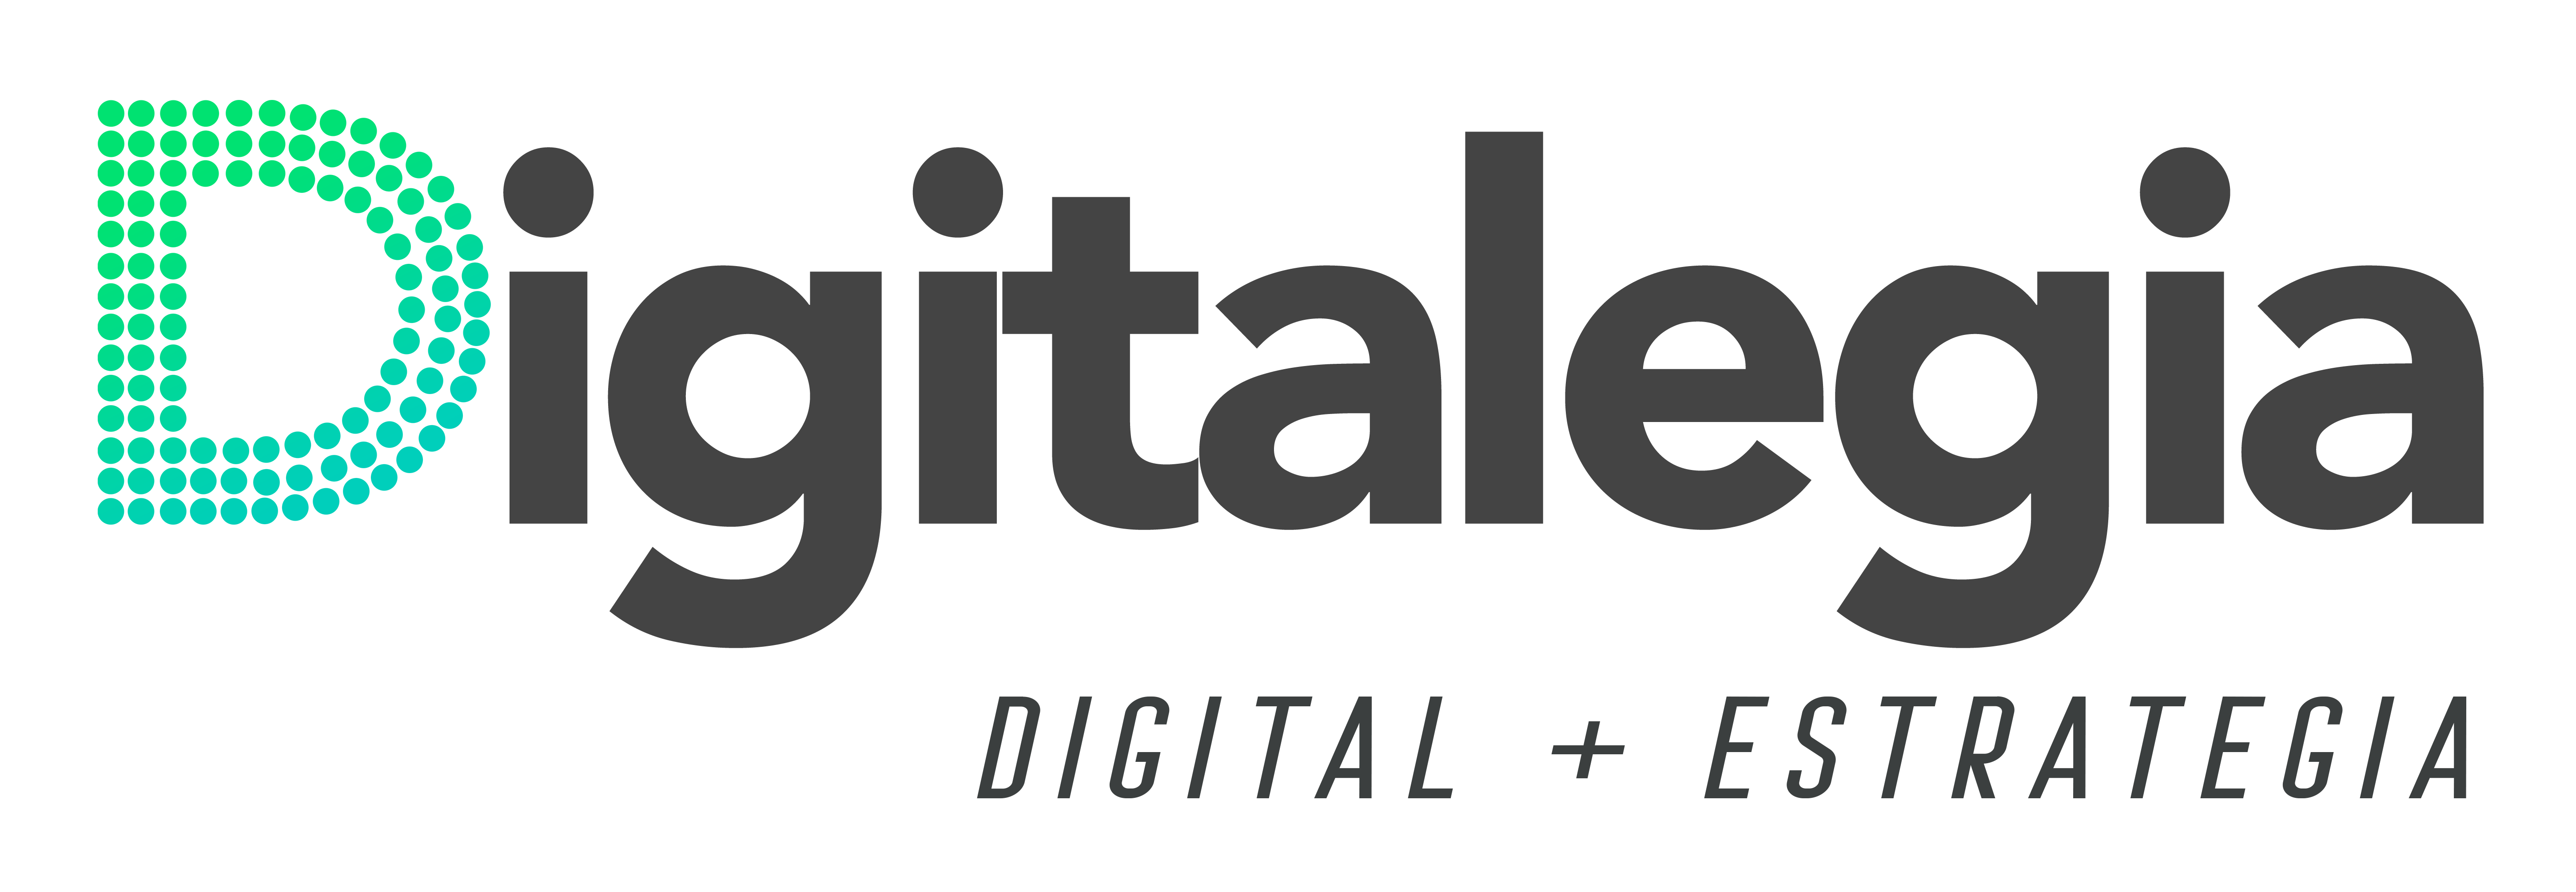 digitalegia logo